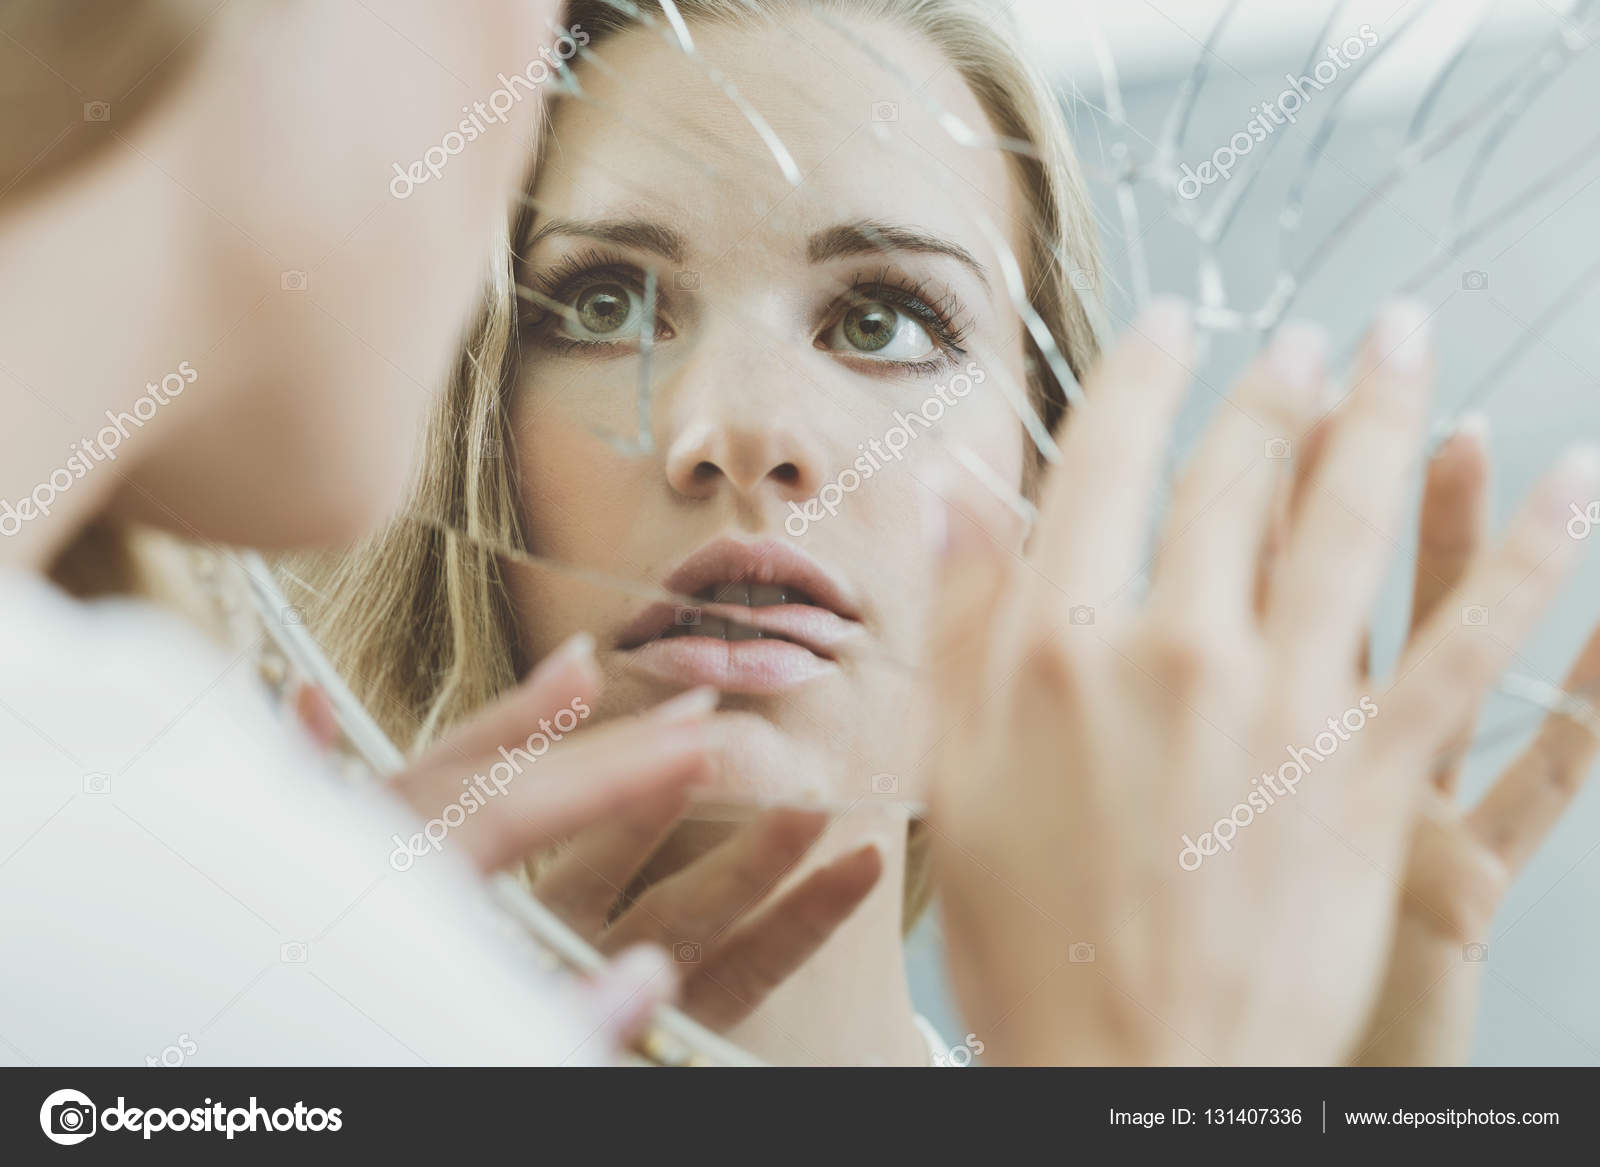 Visage de femme reflété dans le miroir — Photographie photographee.eu © #131407336